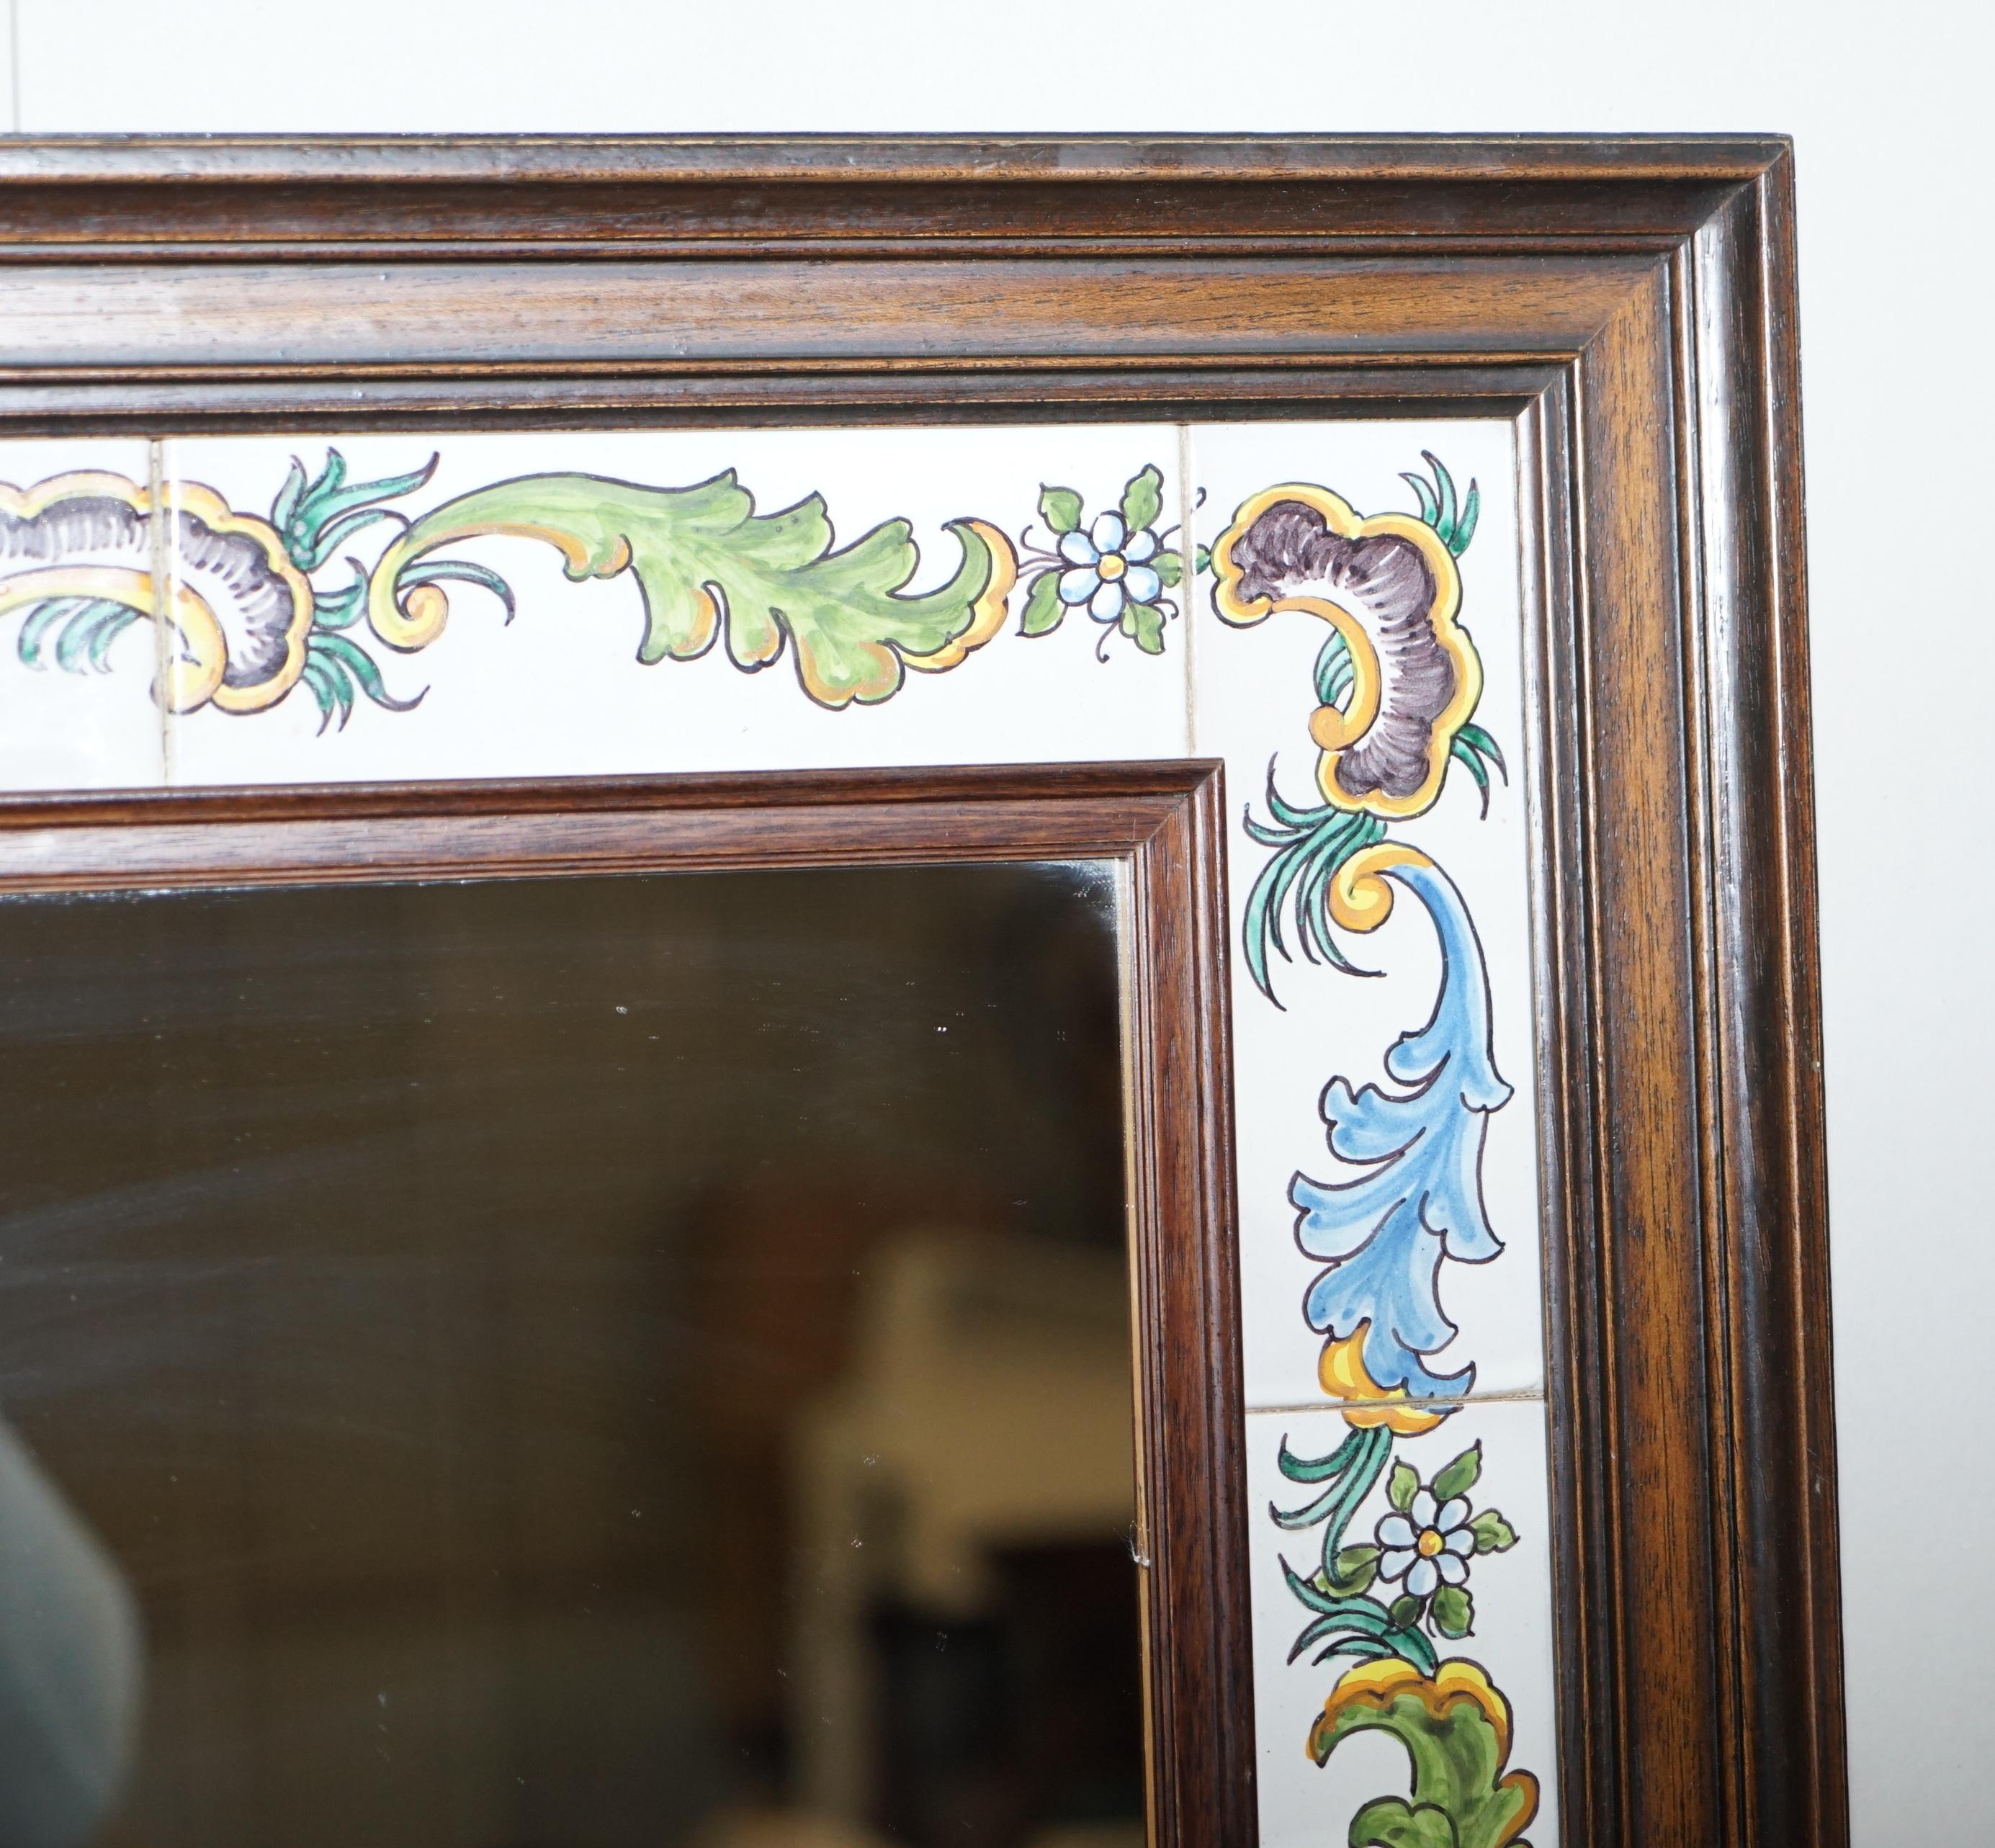 Post-Modern Lovely Vintage Mediterranean Tile Mirror Signed to the Bottom Lovely Look & Feel